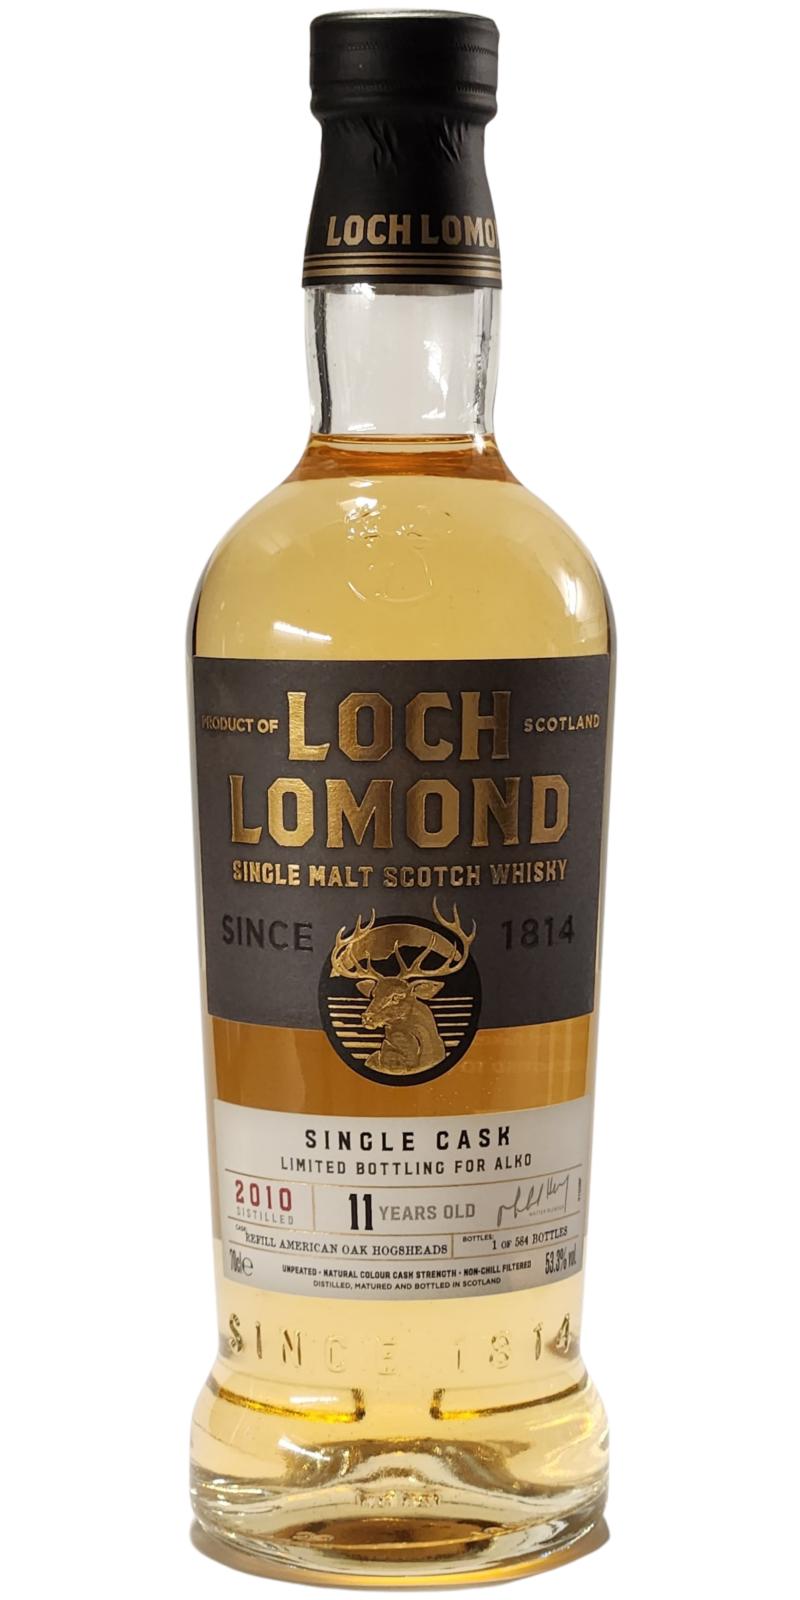 Loch Lomond 2010 Single Cask Refill American Oak Hogsheads Alko 53.3% 700ml